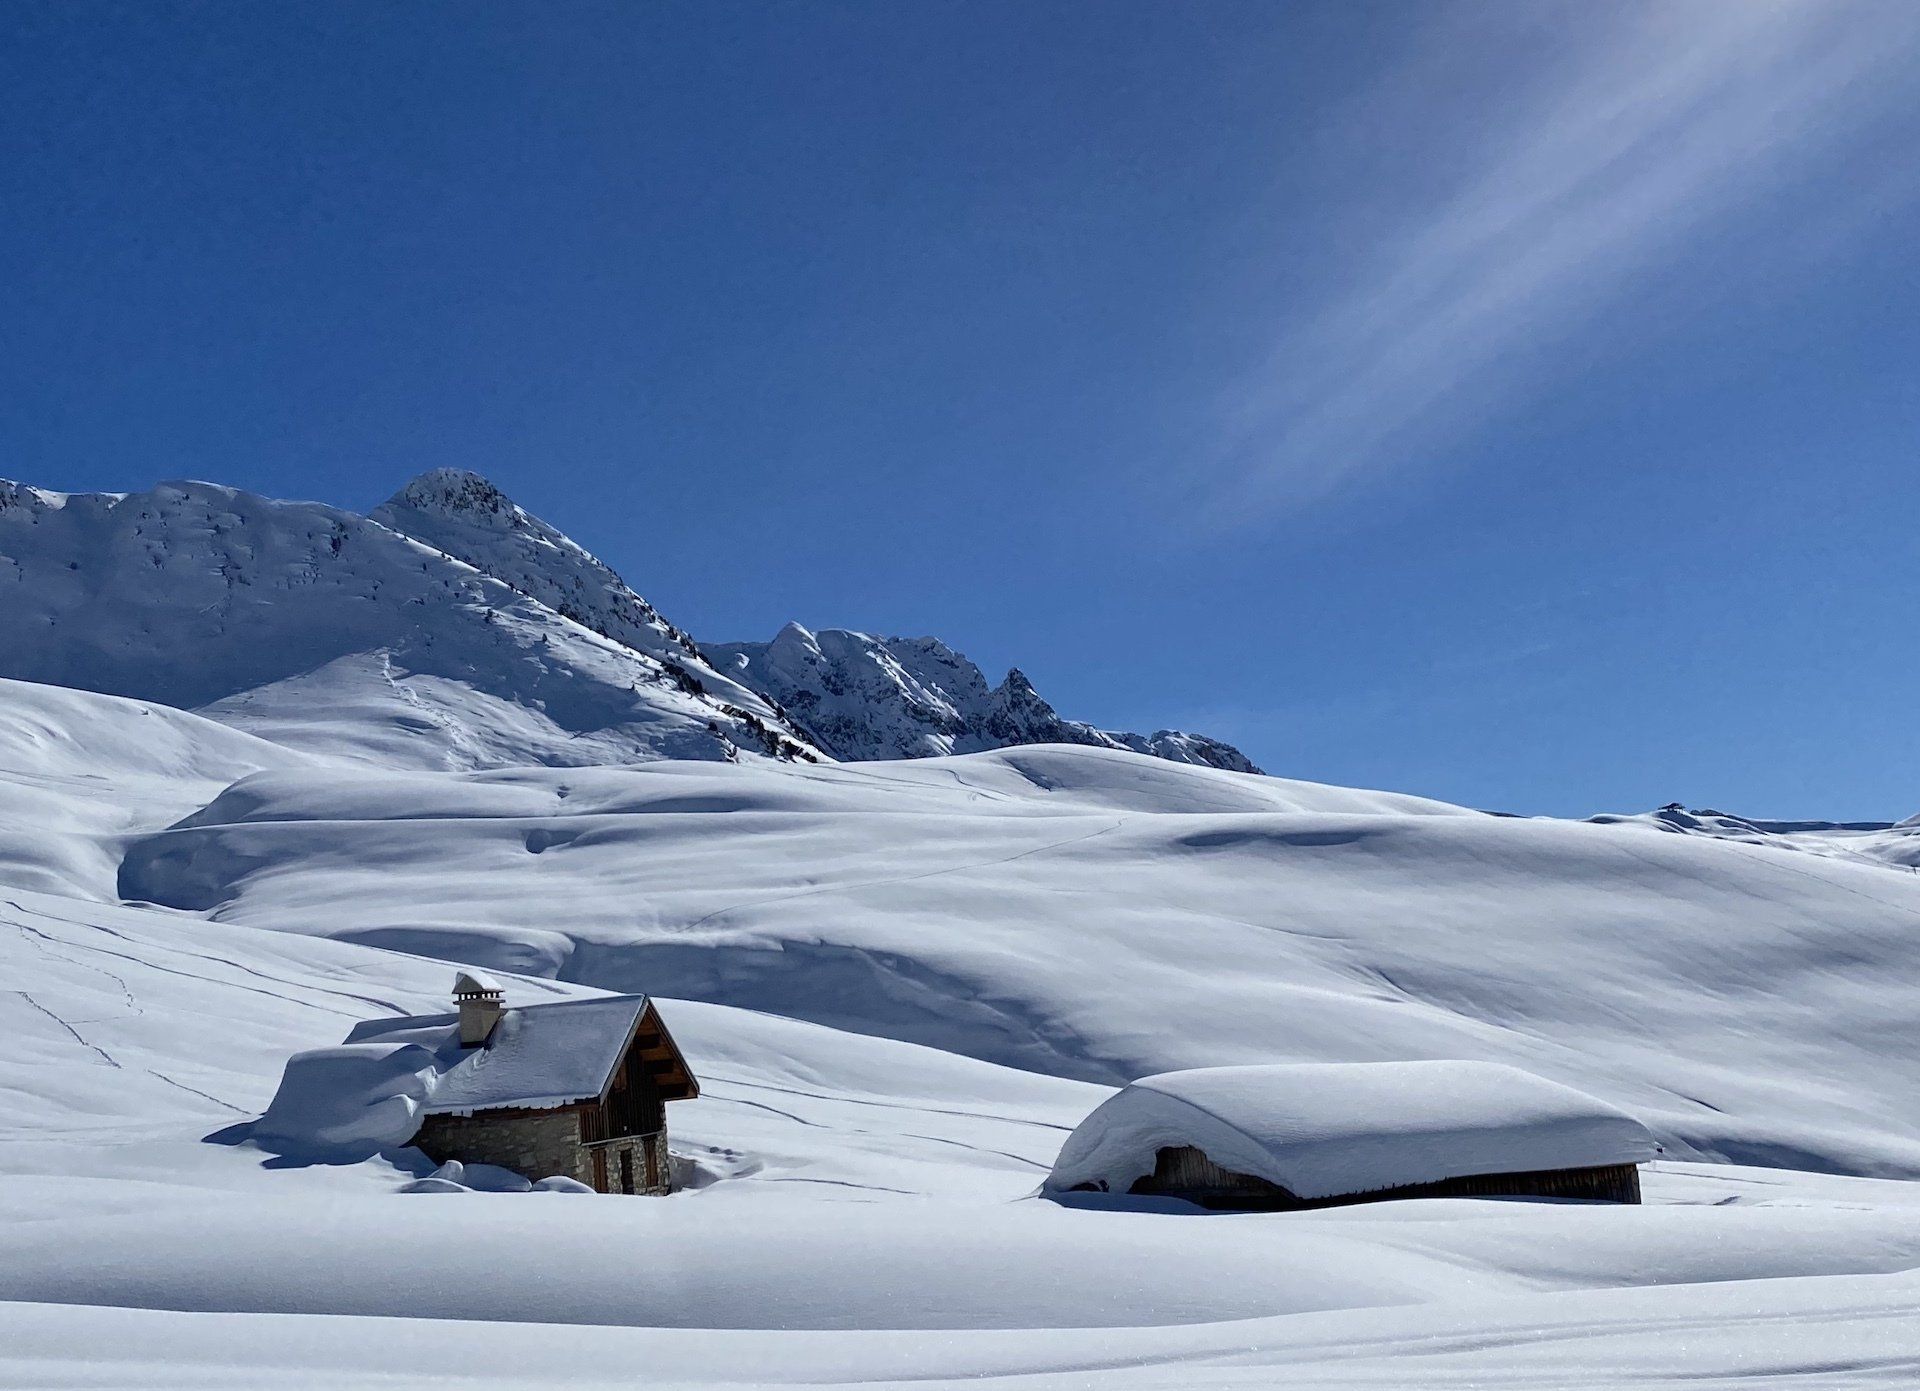 La Plagne - Alpages in the Snow